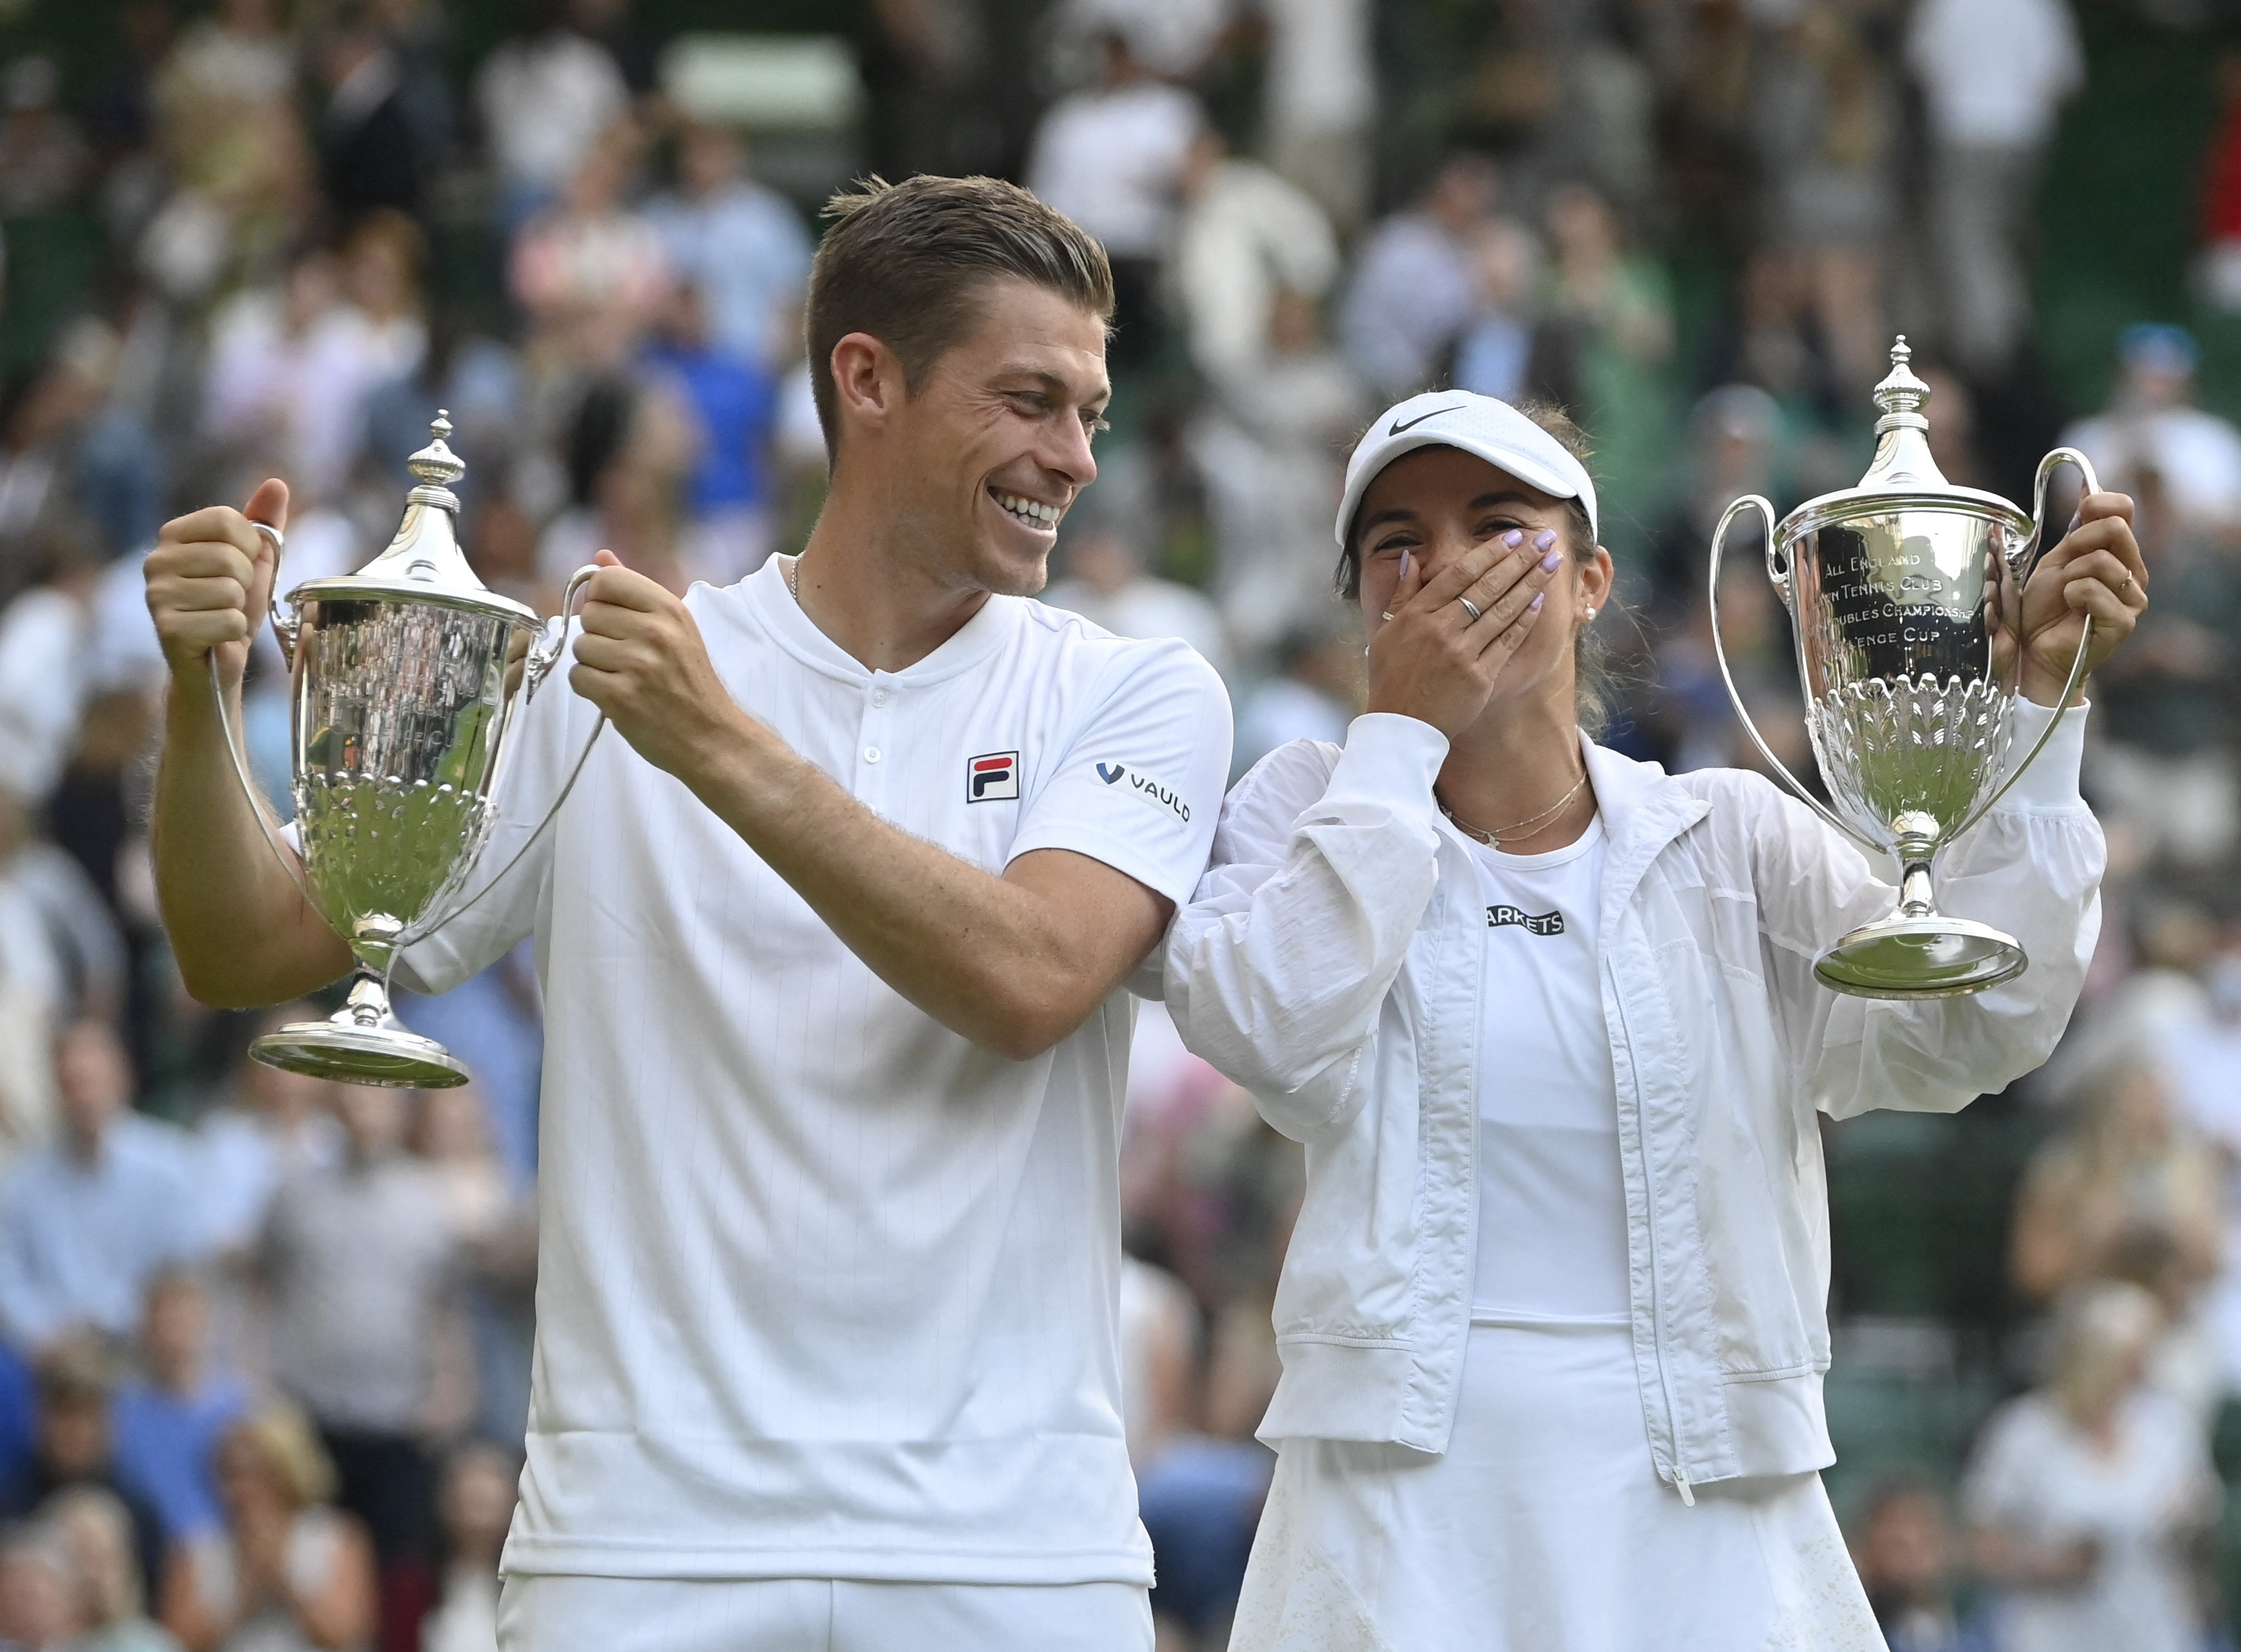 Double delight as Krawczyk Skupski retain Wimbledon Reuters